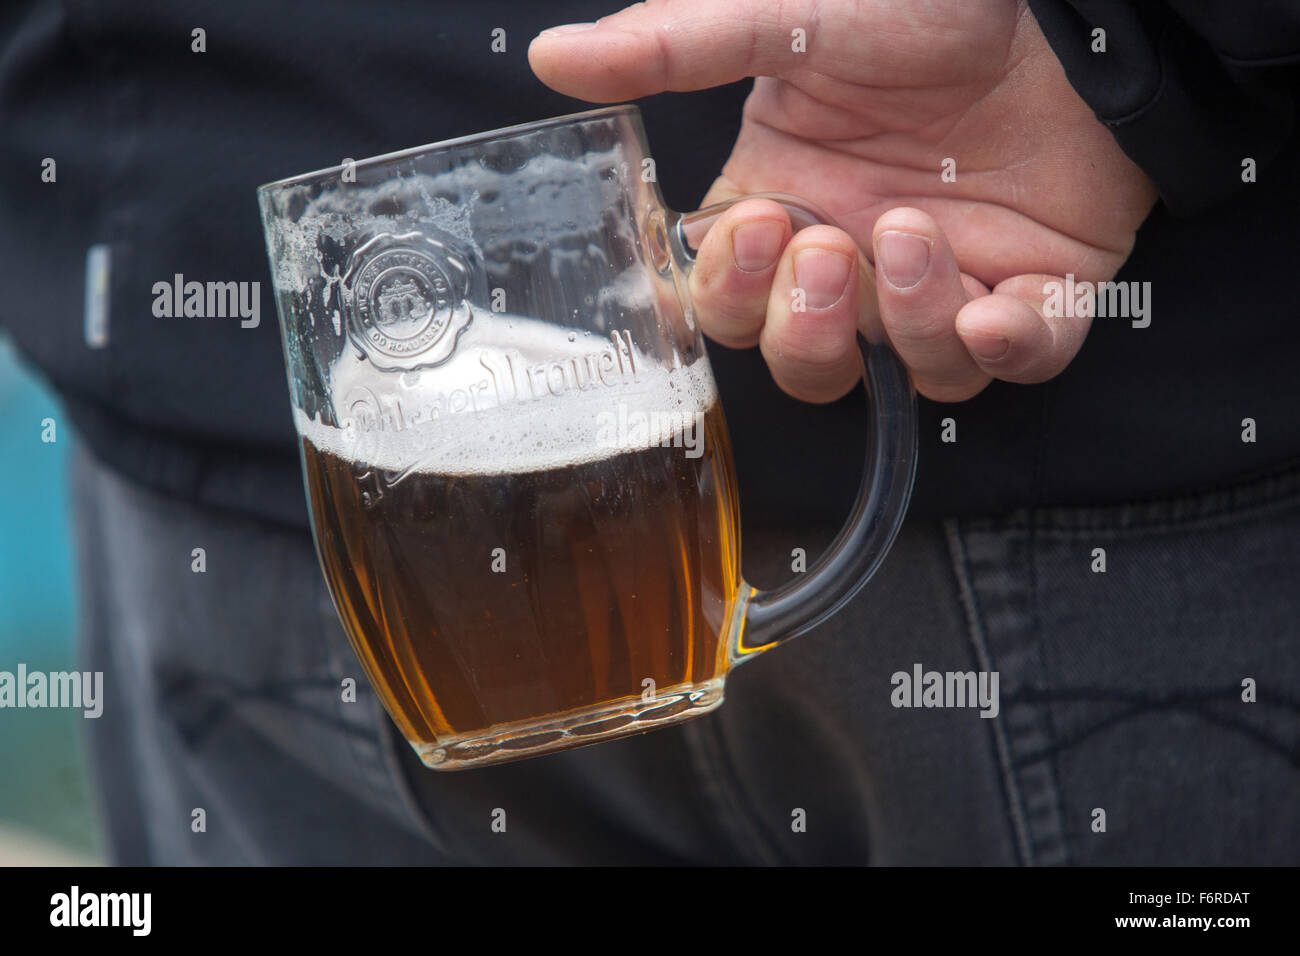 Man holding back Czech beer glass Pilsner Urquell beer, Czech Republic Stock Photo